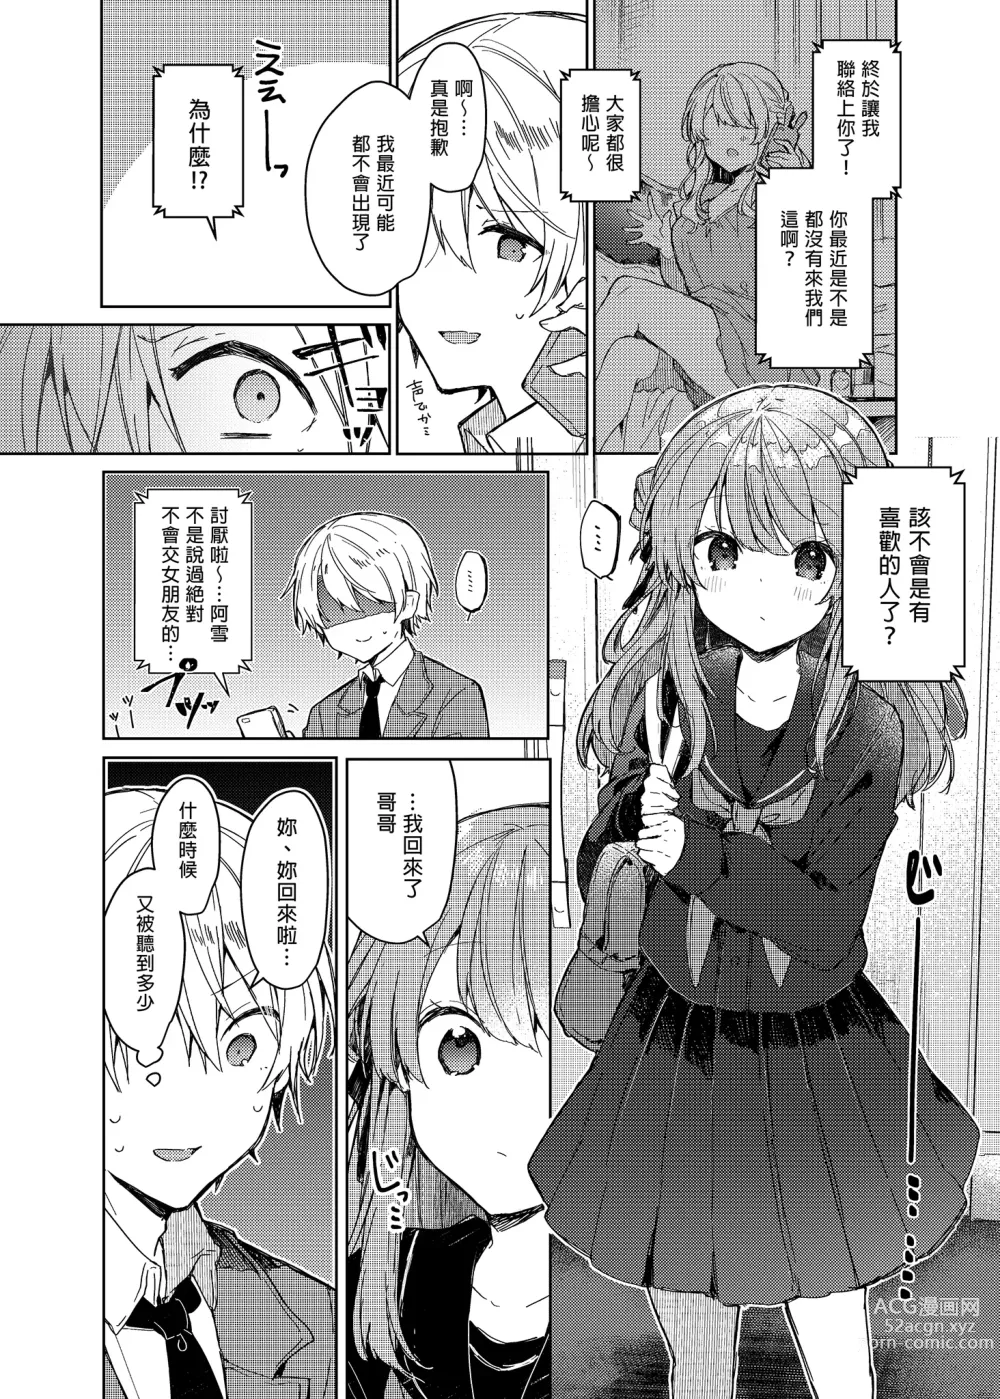 Page 12 of doujinshi 今天開始當個壞孩子。 (decensored)